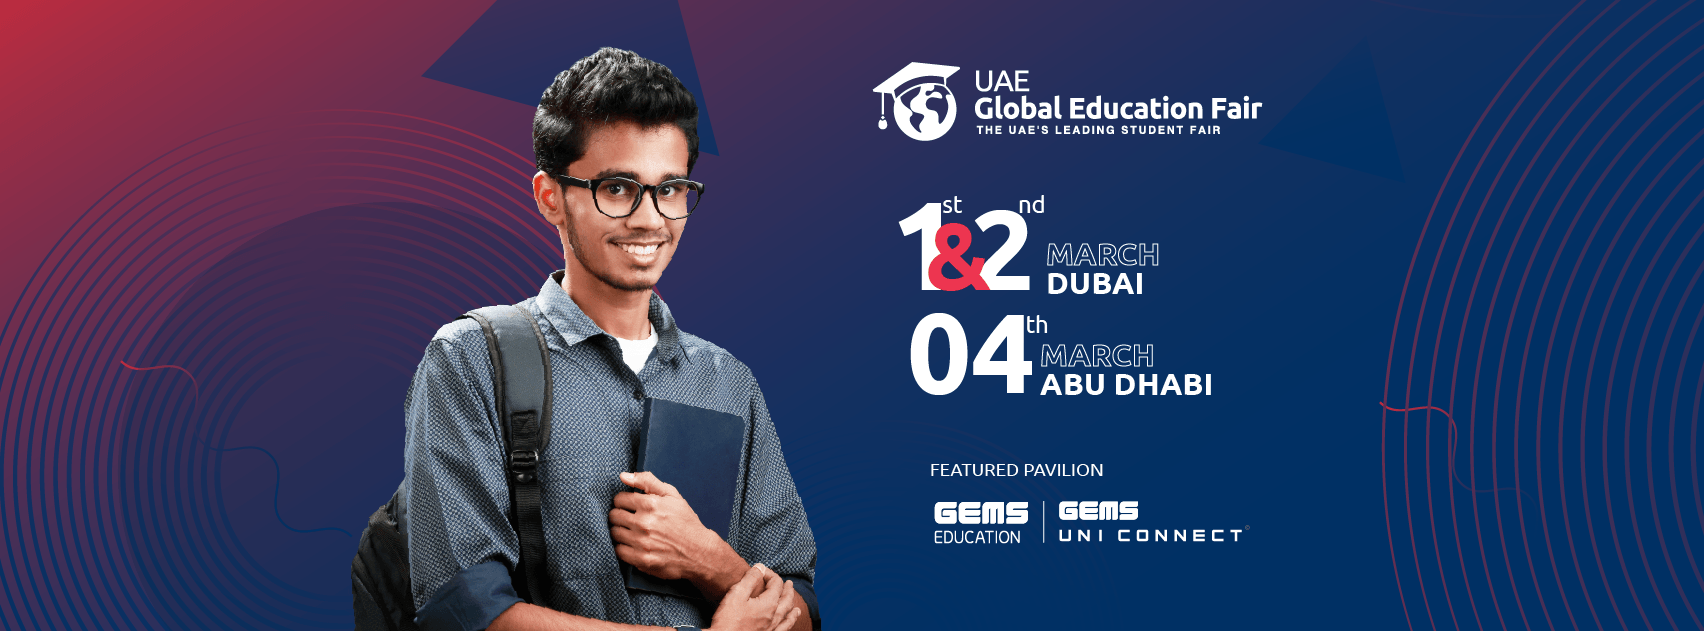 UAE Global Education Fairs - Coming Soon in UAE